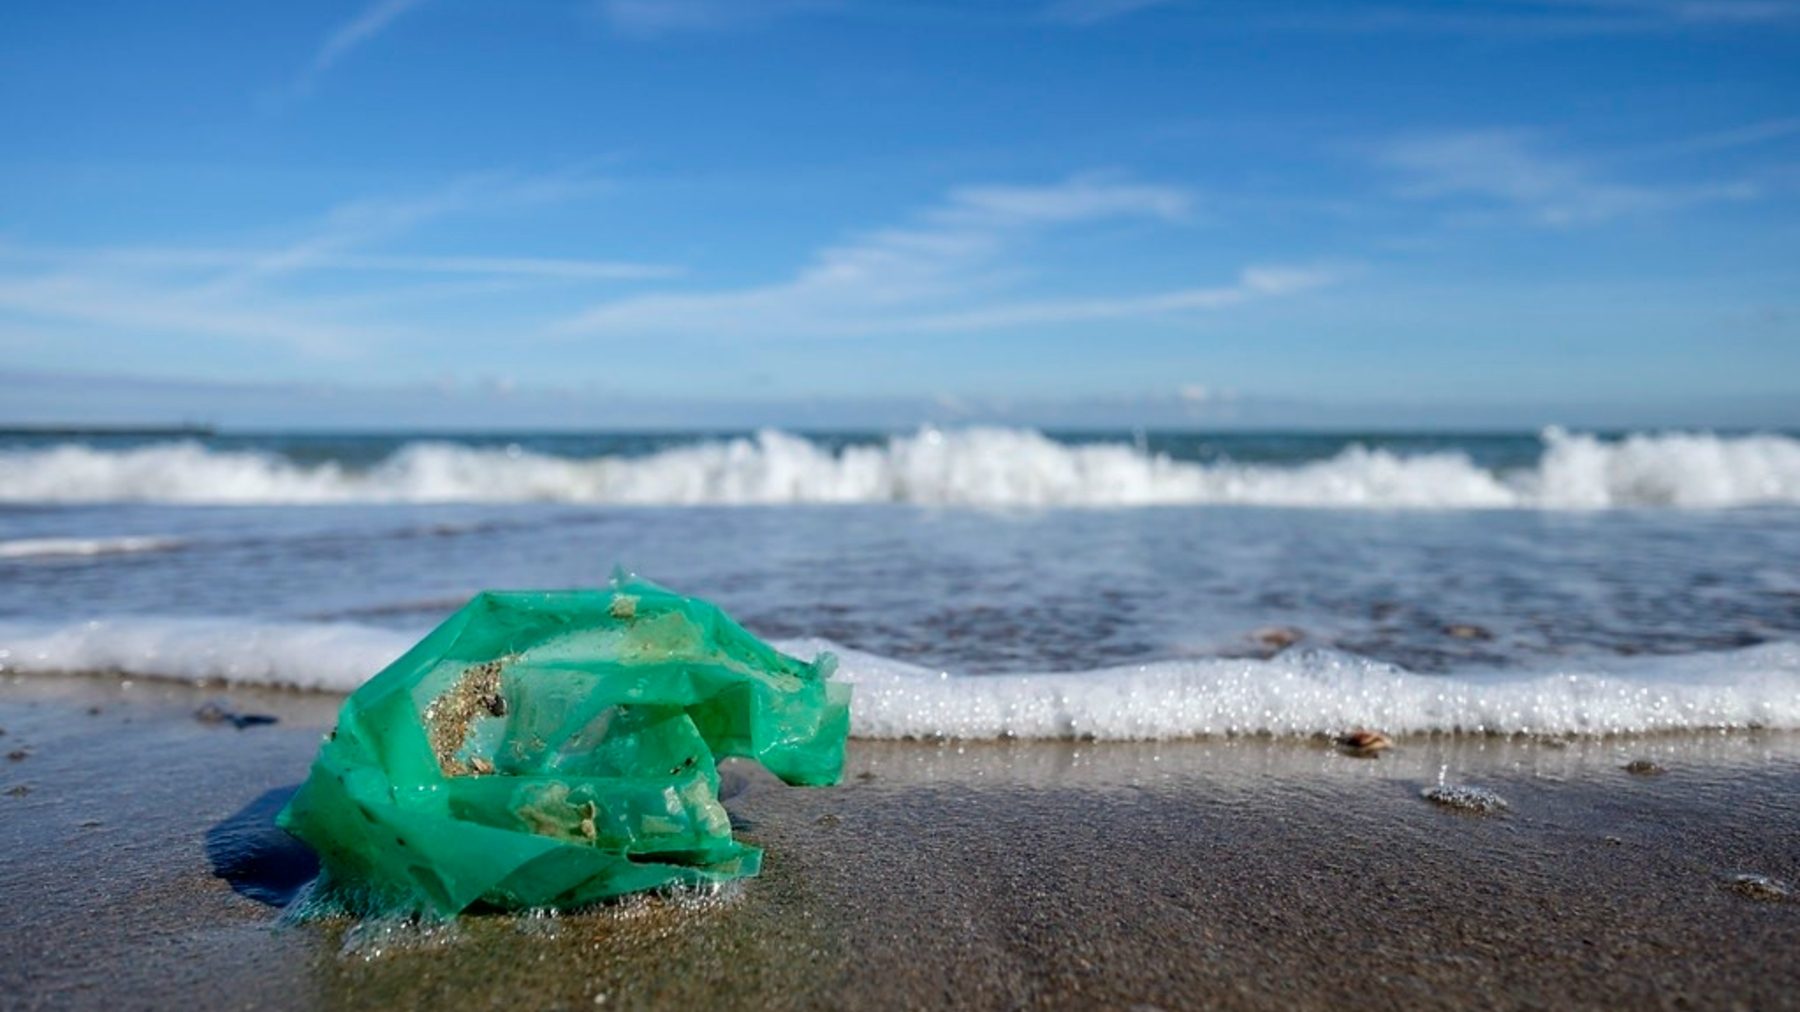 Bolsa de plástico en la orilla de una playa (WOUTER DE BRUIJN).